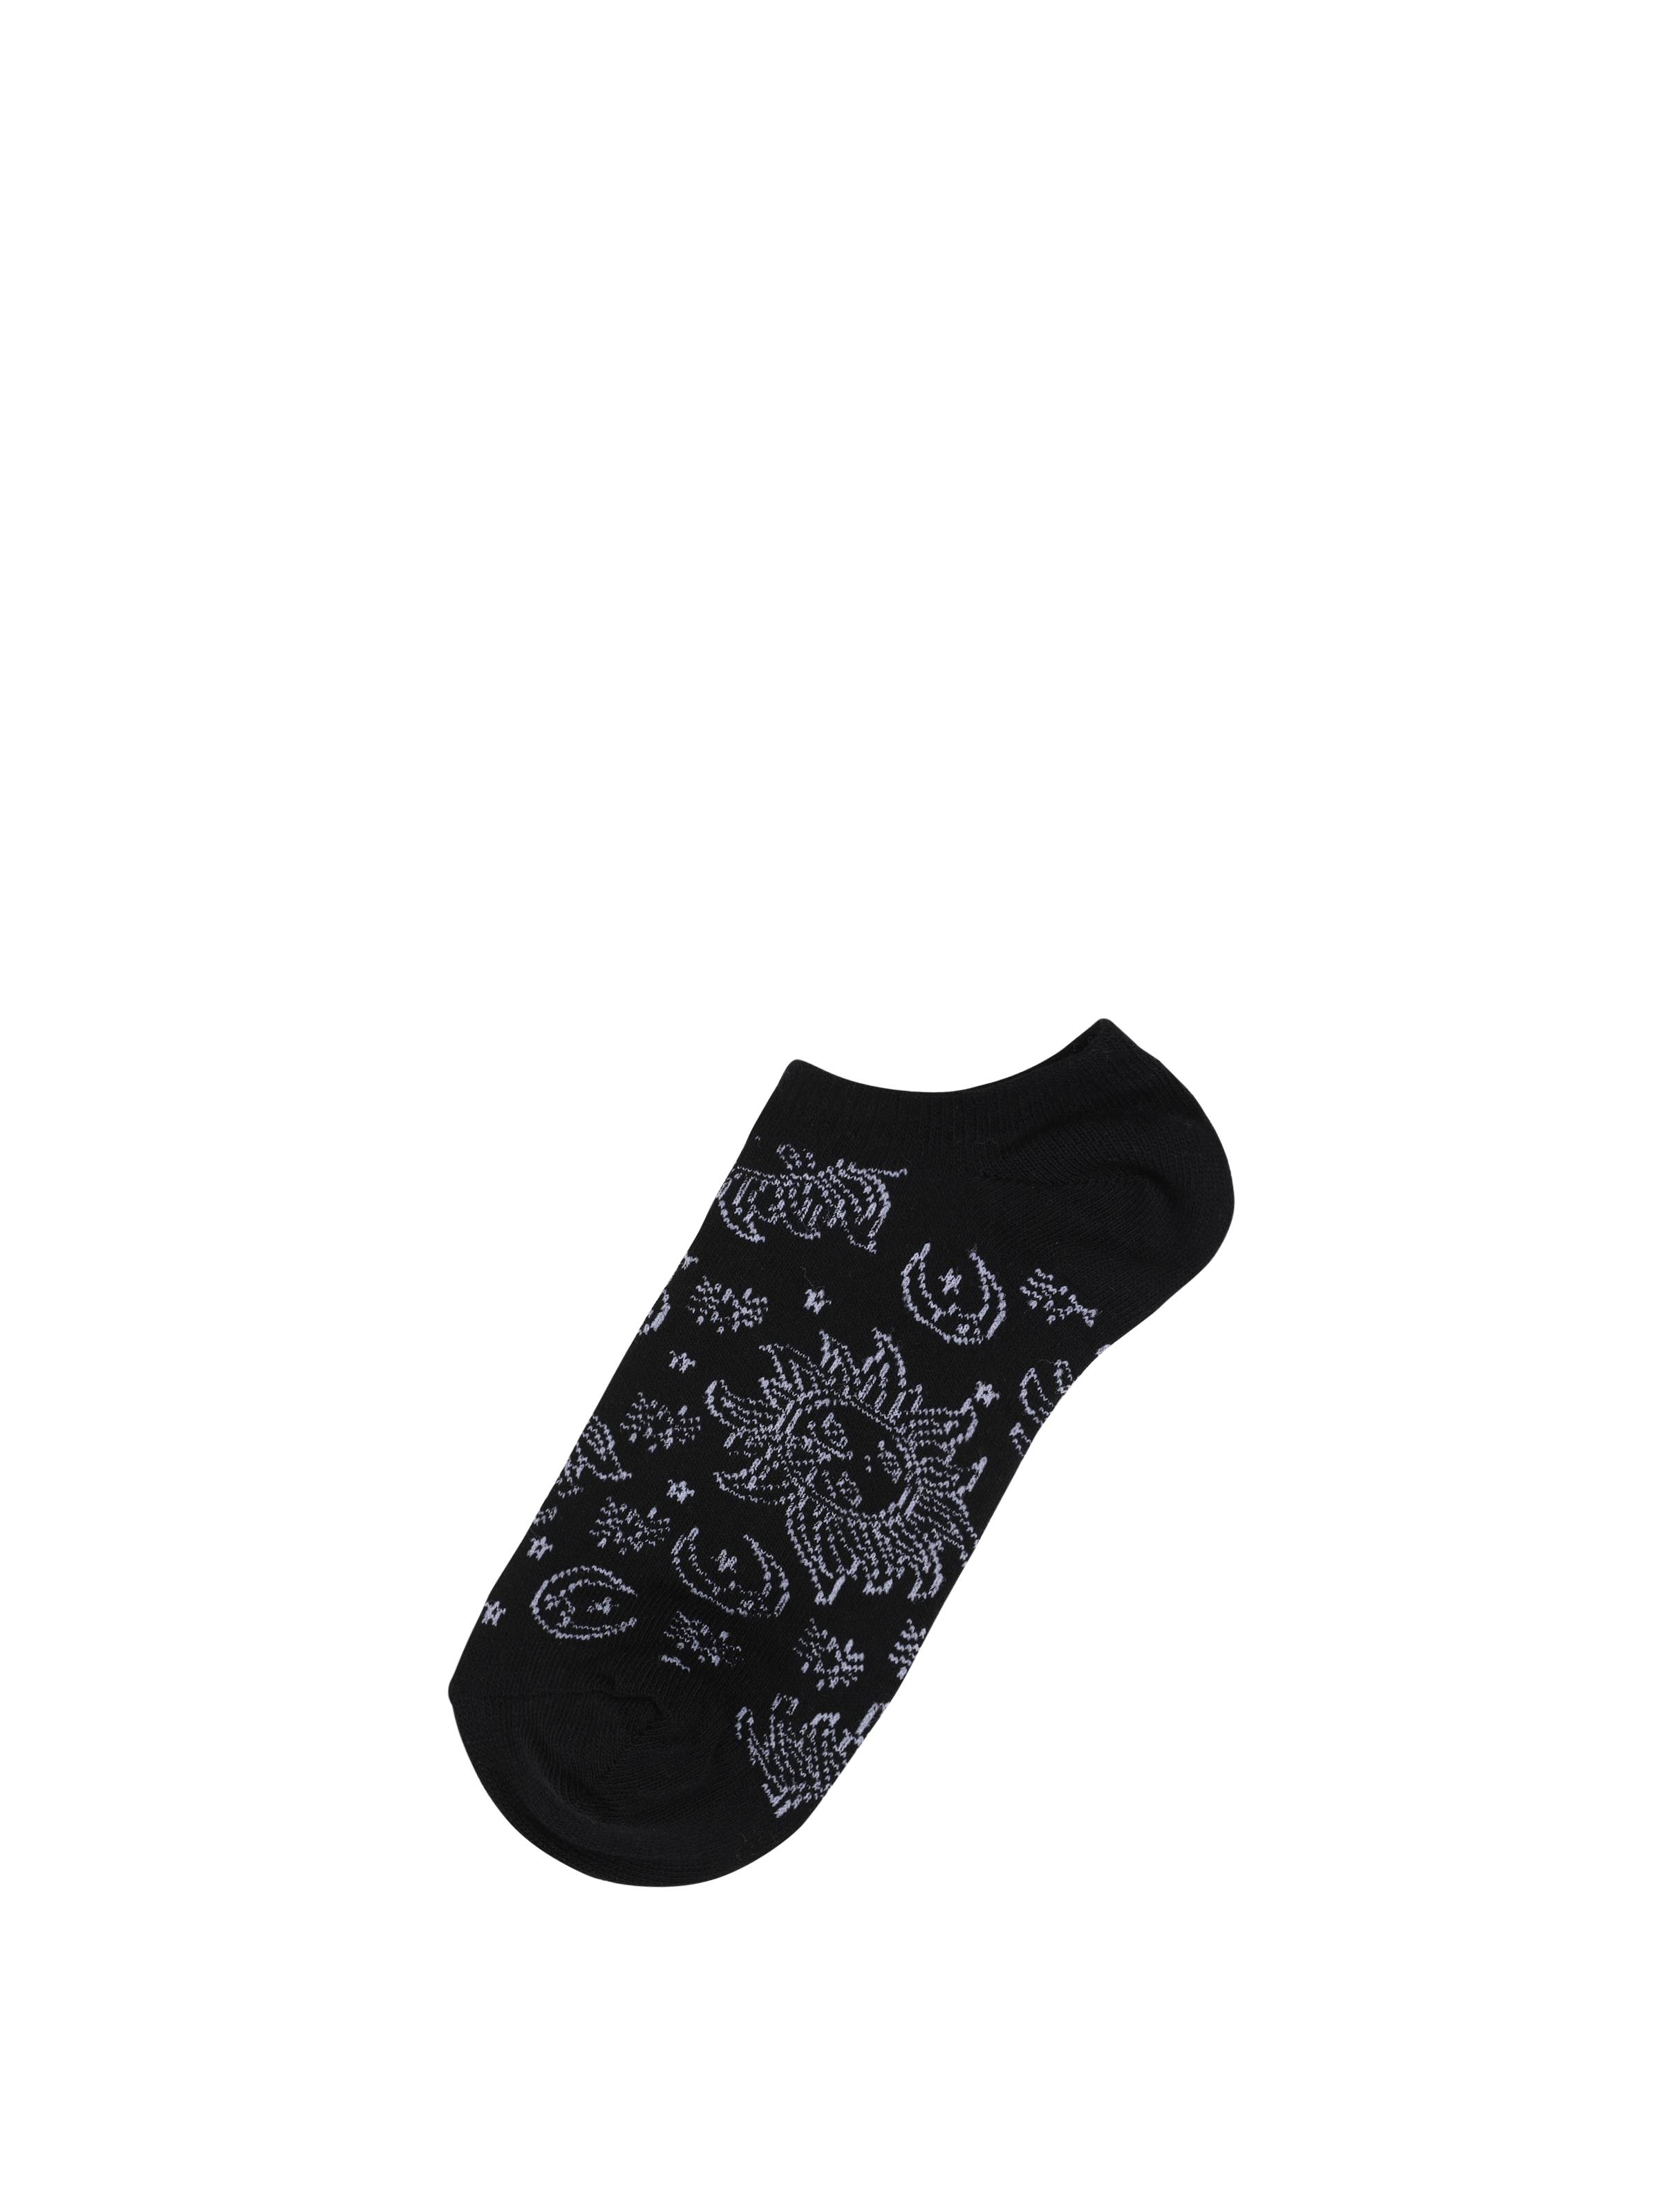 Baskılı Siyah Kadın Çorap Cl1062086